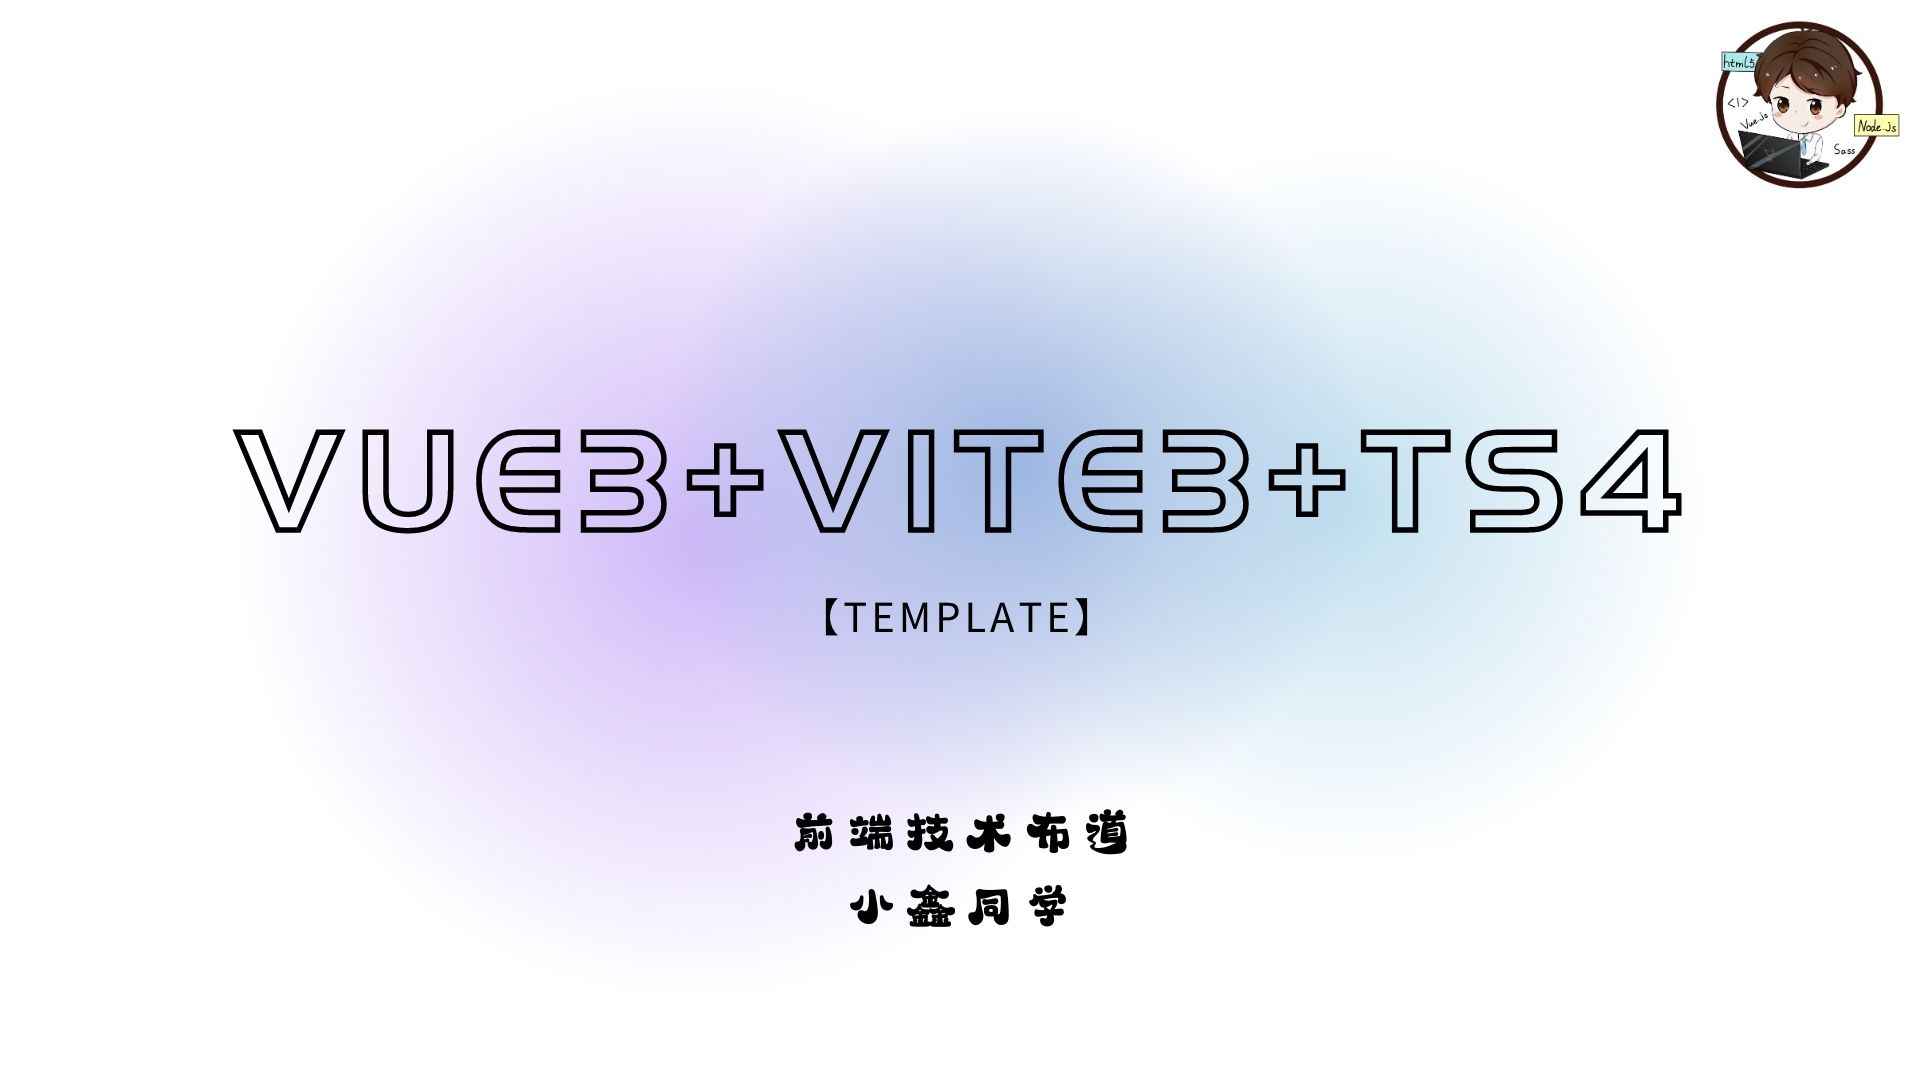 【项目模板】Vue3+Vite3+Ts4